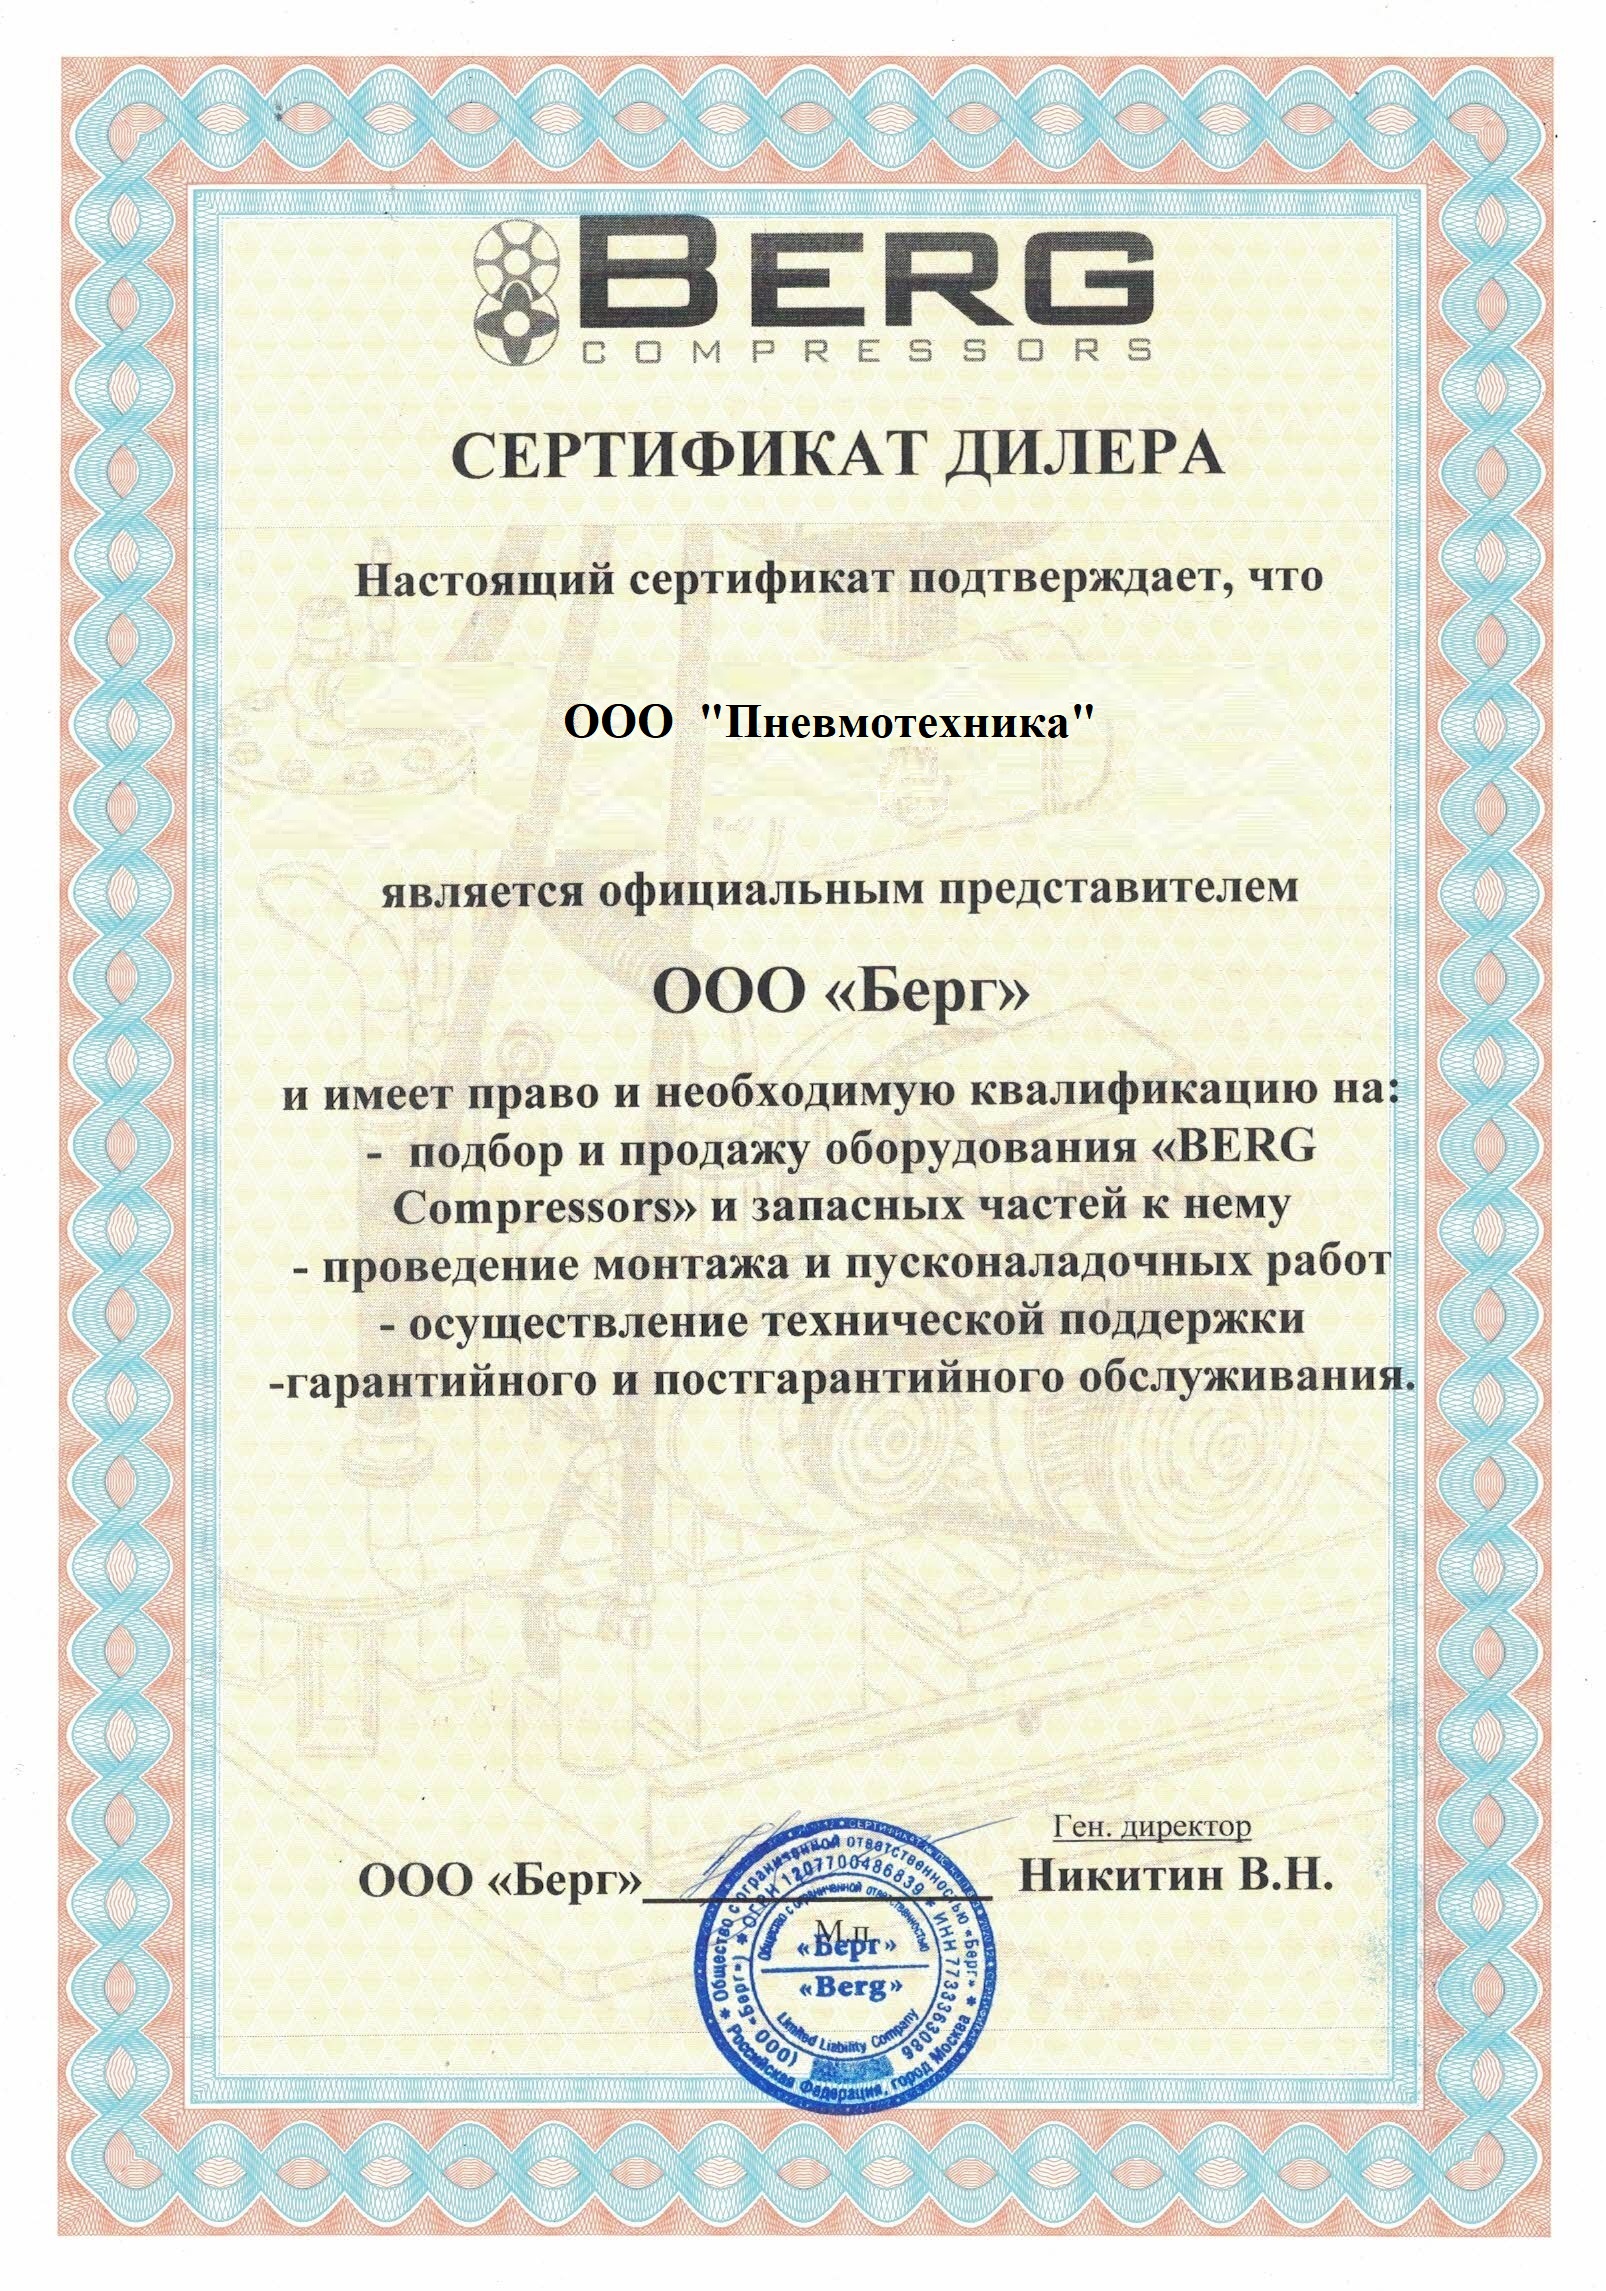 Сертификат, подтверждающий, что ООО «Пневмотехника» является официальным представителем ООО "Берг" 